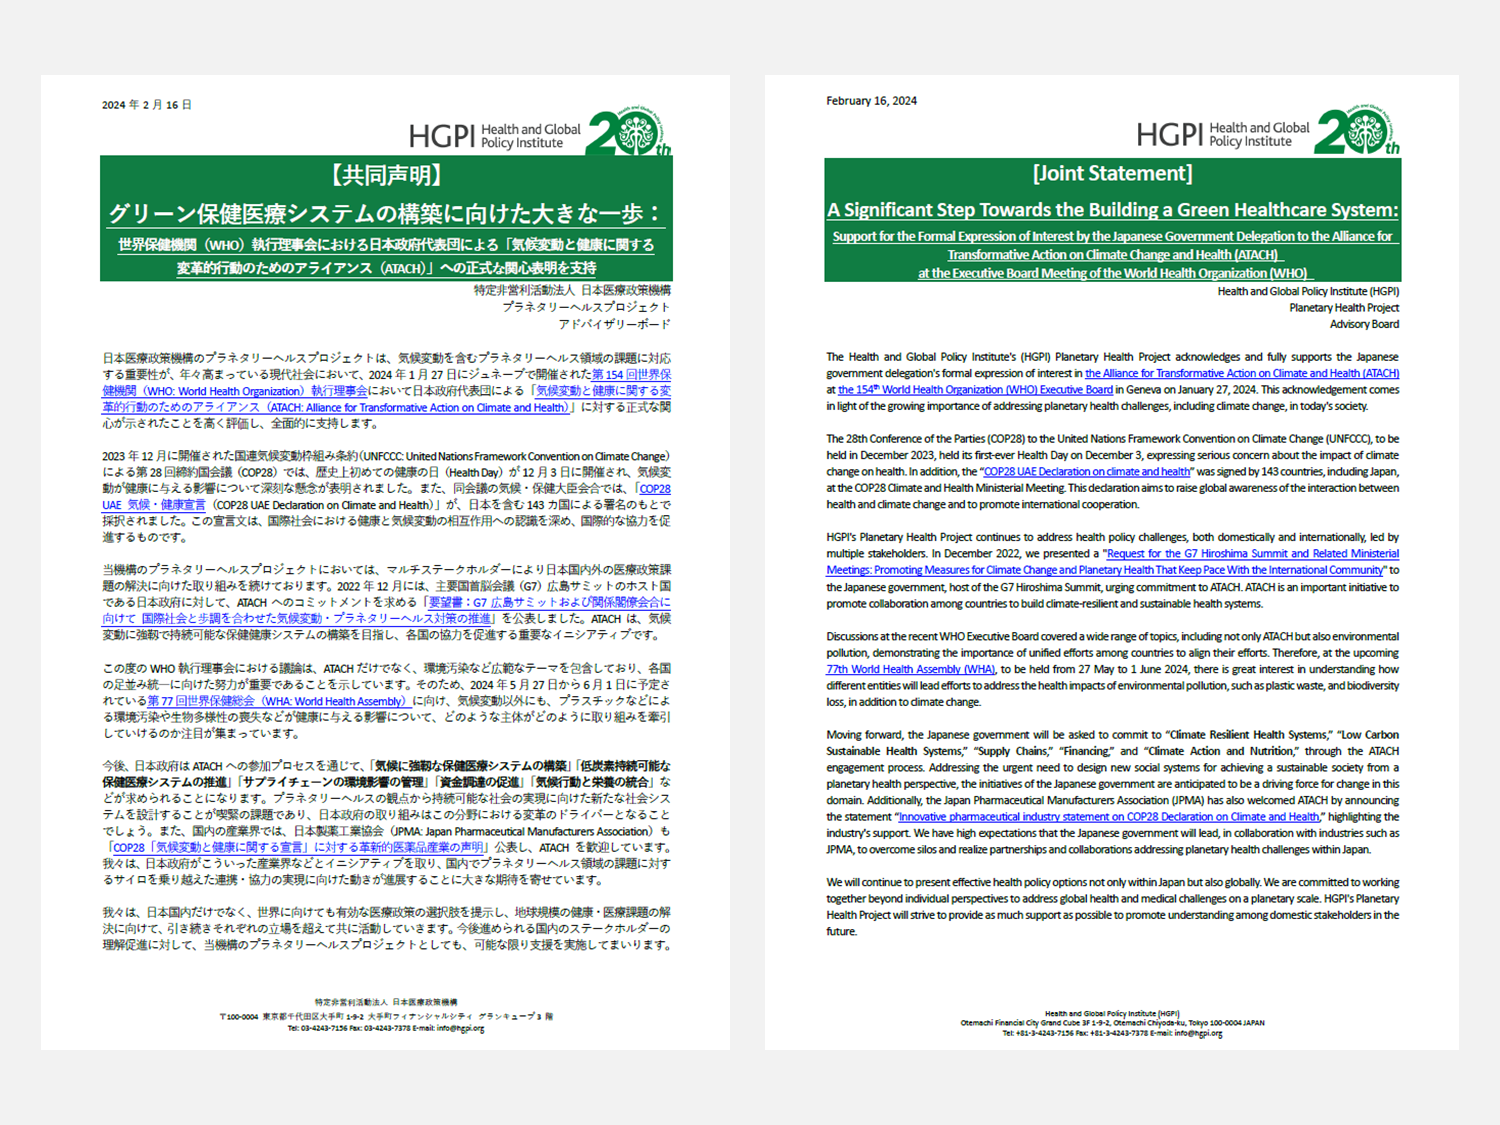 【お知らせ】グリーン保健医療システムの構築に向けた大きな一歩：世界保健機関（WHO）執行理事会における日本政府代表団による「気候変動と健康に関する変革的行動のためのアライアンス（ATACH）」への正式な関心表明を支持（2024年2月16日）